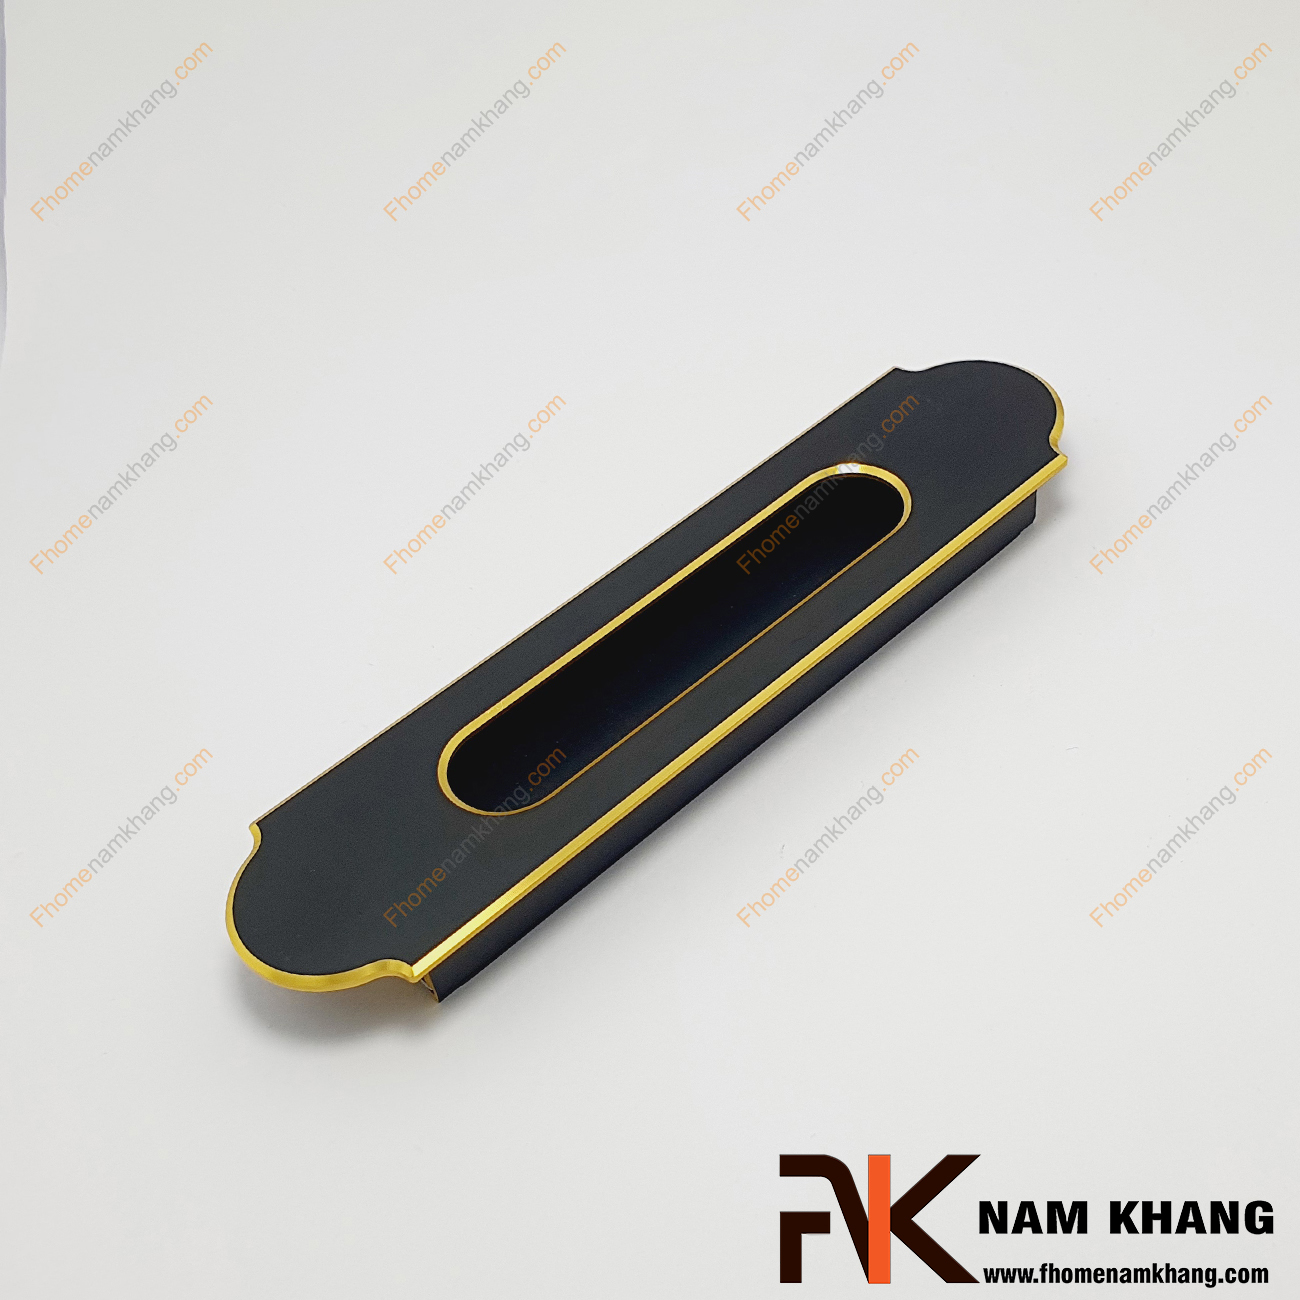 Tay nắm âm cửa tủ màu đen viền vàng NK488-128DV - một mẫu tay nắm âm tủ cao cấp có khuôn dạng cổ điển với màu đen mờ, chạy viền là đường line vàng sáng ánh kim mang ấn tượng cao.